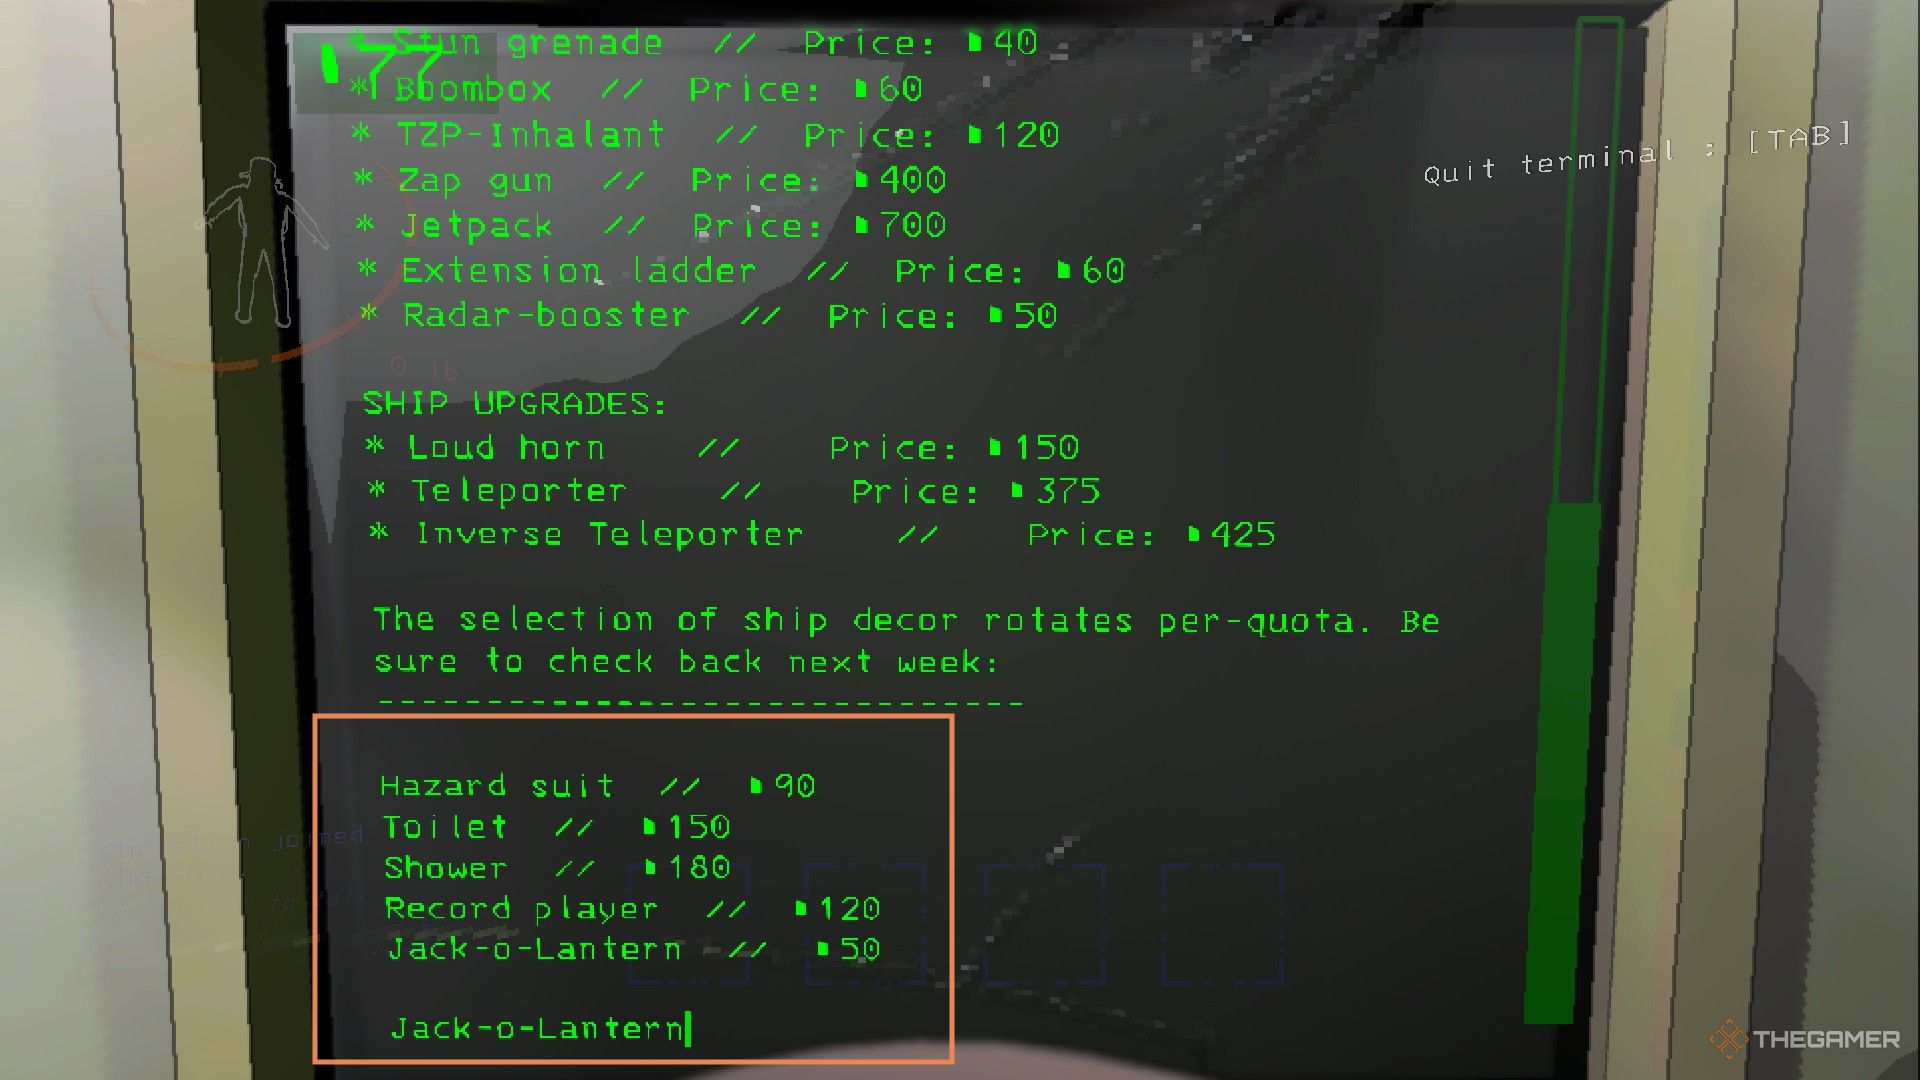 Скриншот терминала, показывающий сделку с Джеком О'Лантерном.